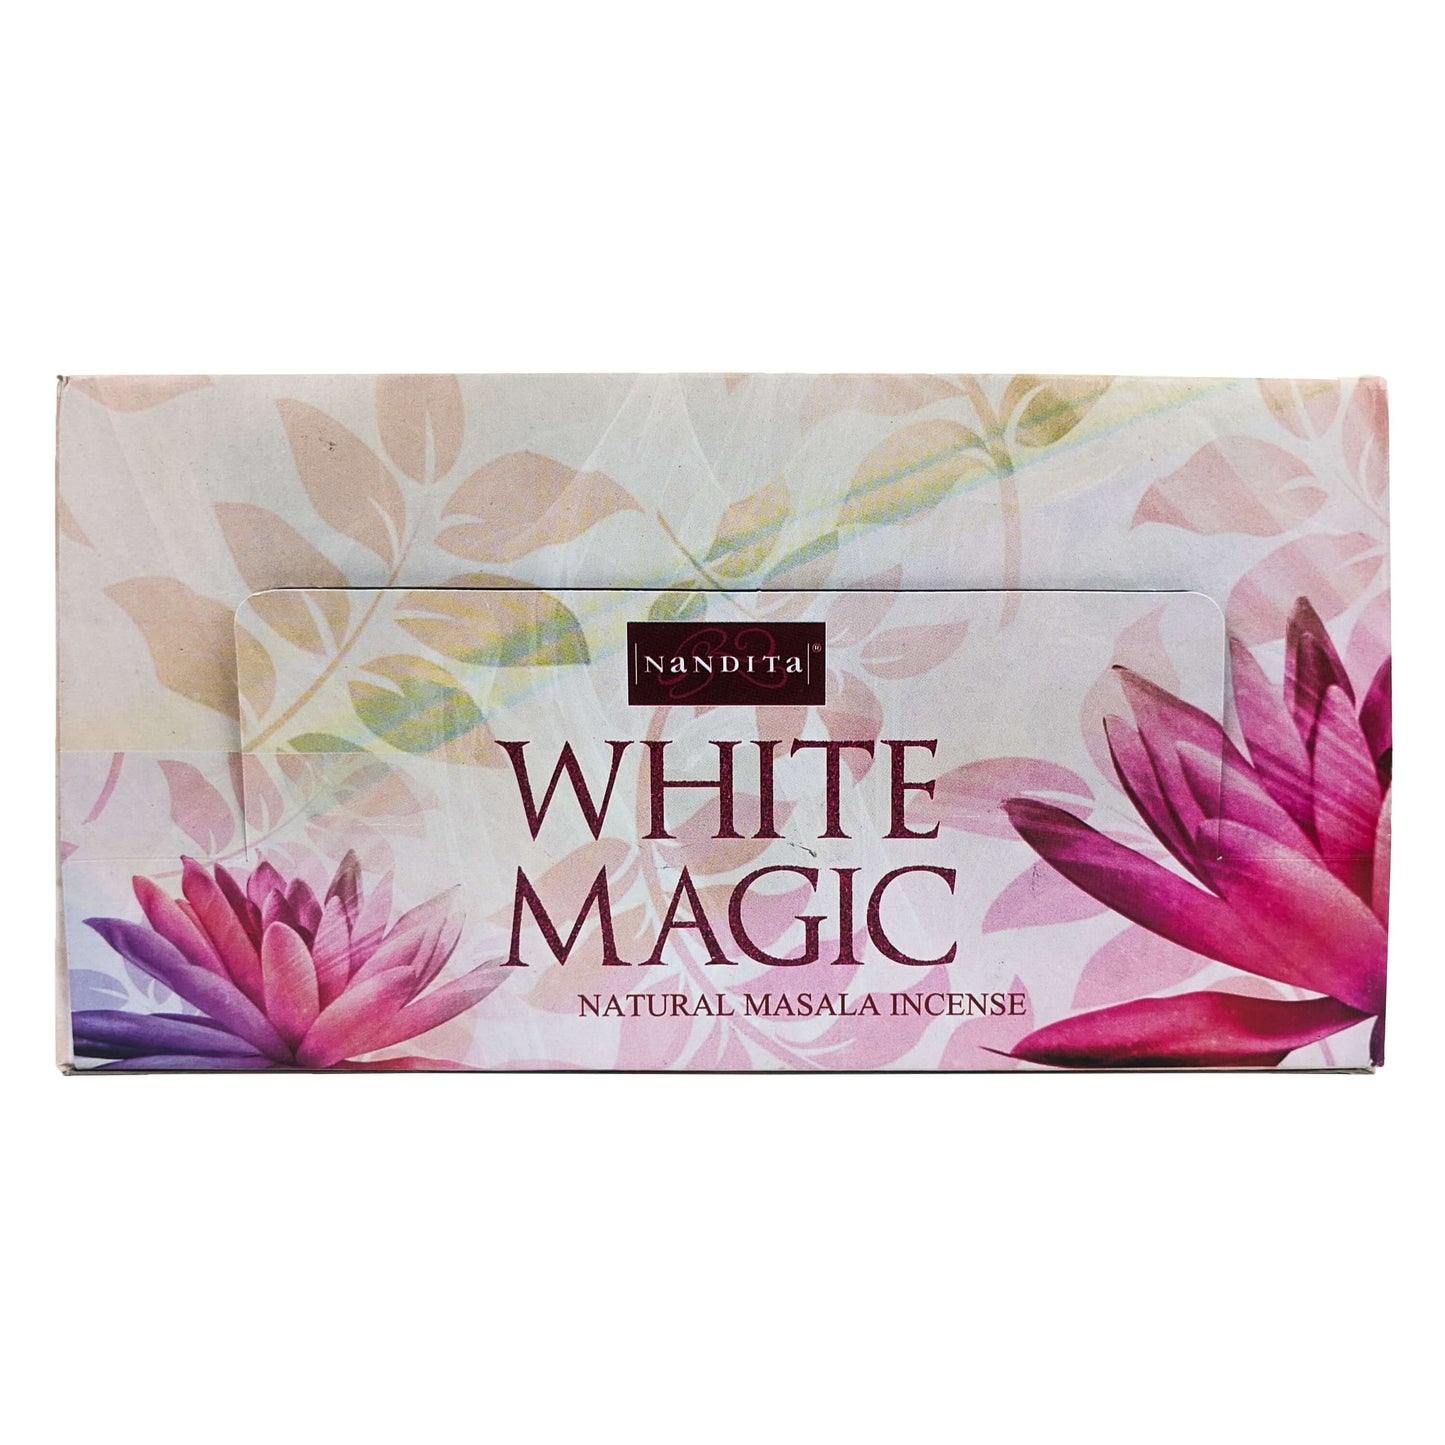 Nandita White Magic Incense Sticks, 15g Packs